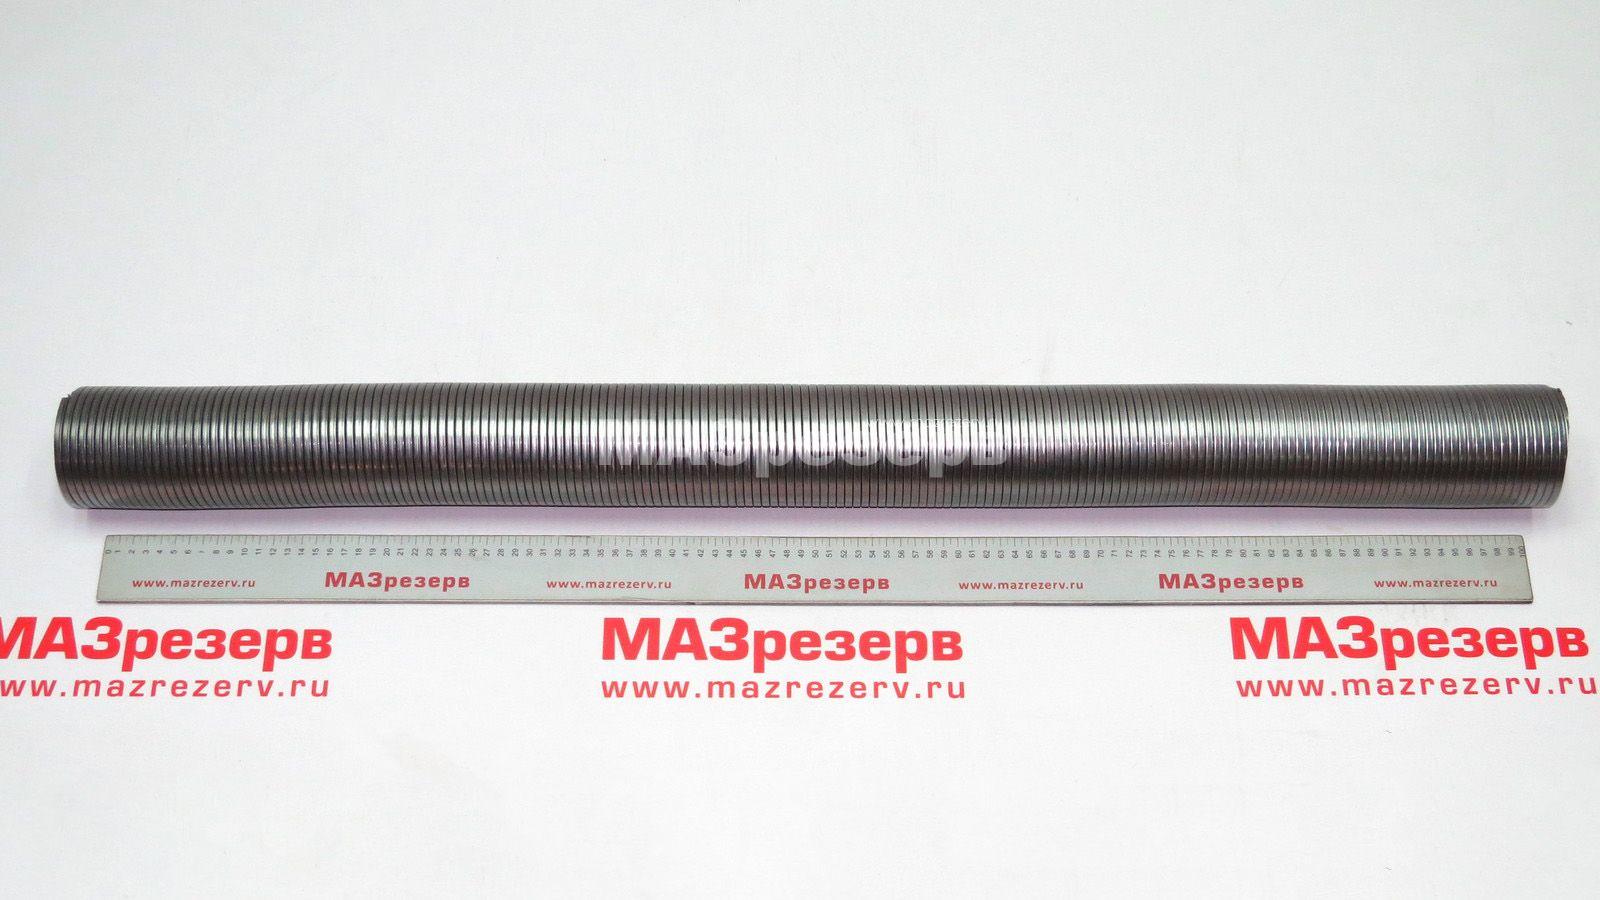 Металлорукав "Зубрёнок" (гофра, L-1000 мм, д-р 80 мм) 4370-1203024-01